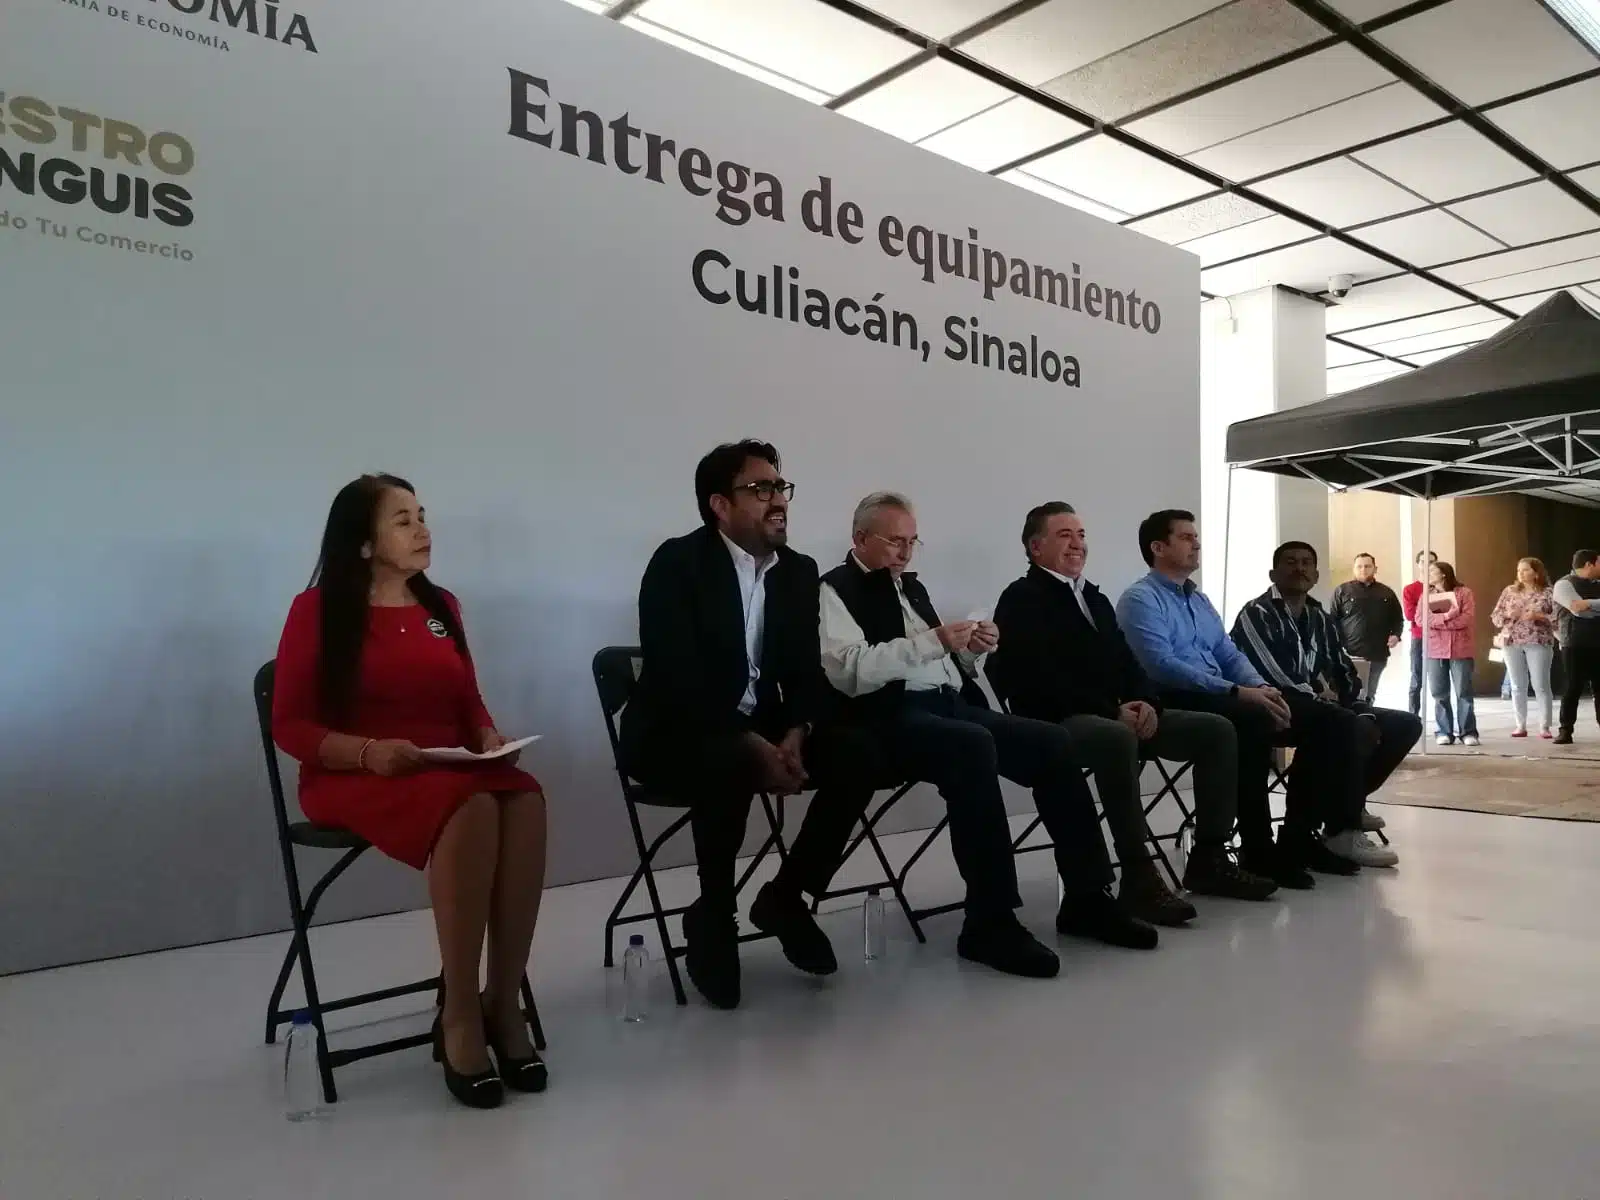 Rubén Rocha Moya en conferencia sobre la entrega de equipamiento a comerciantes de “Nuestro Tianguis” en Culiacán